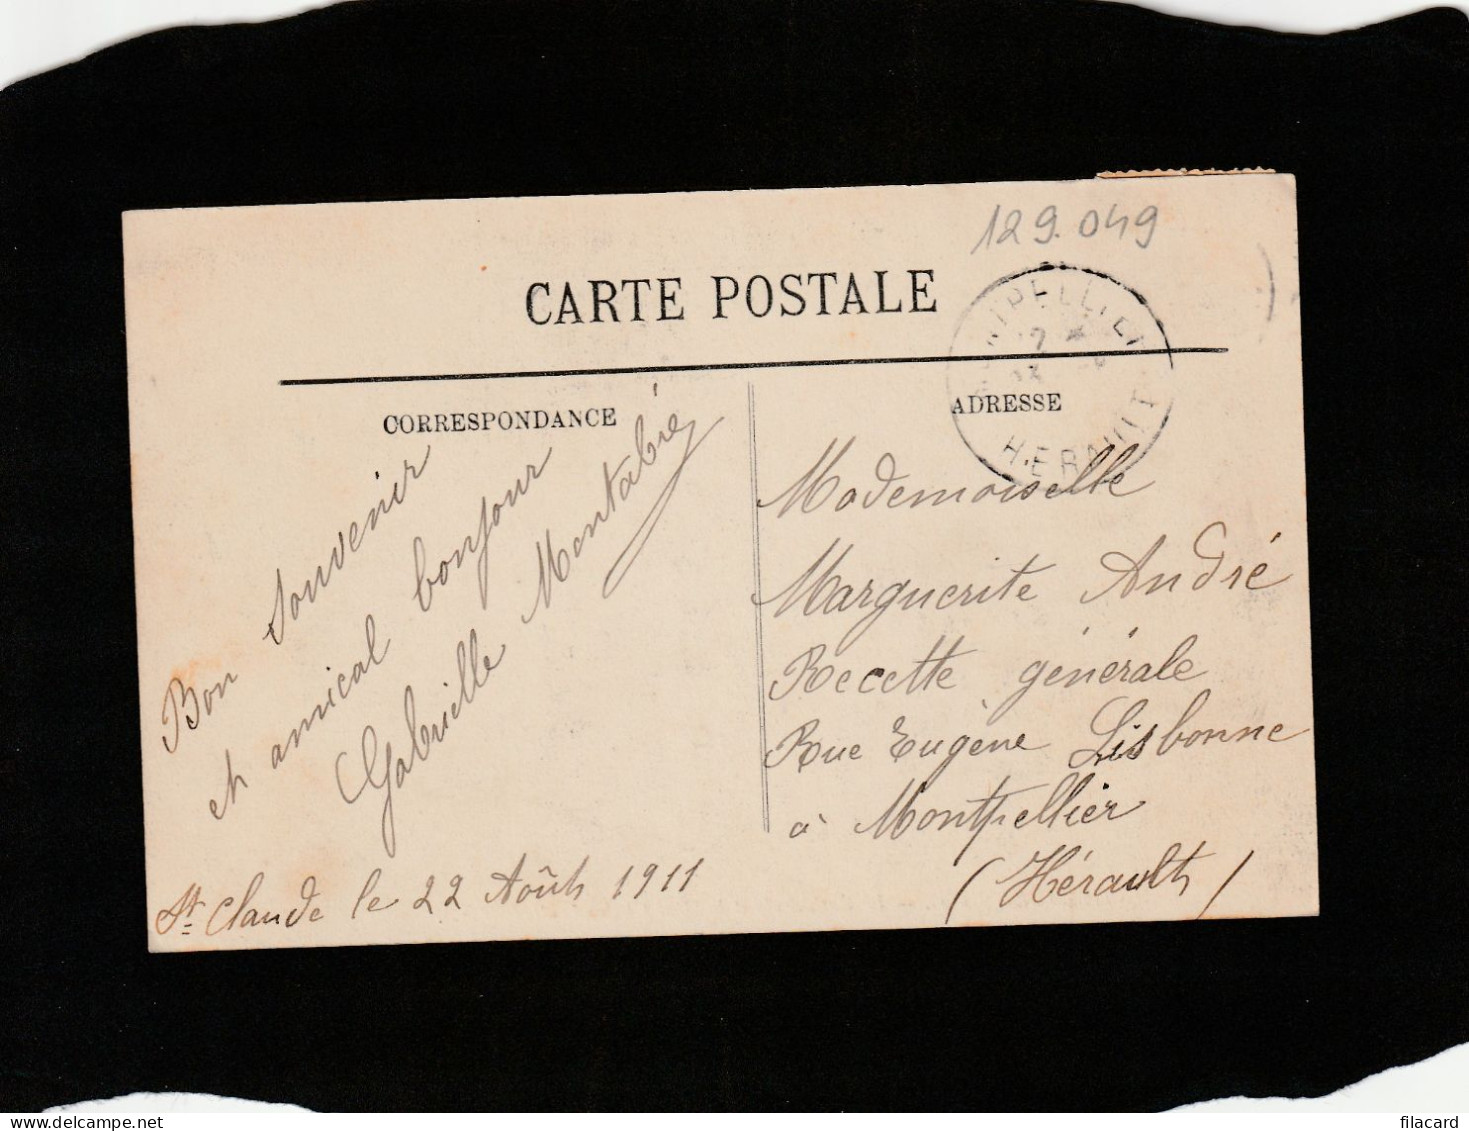 129049          Francia,    Saint-Claude,   La  Cathedrale  Et  Le  Mont  Chaboud,   VG   1911 - Saint Claude